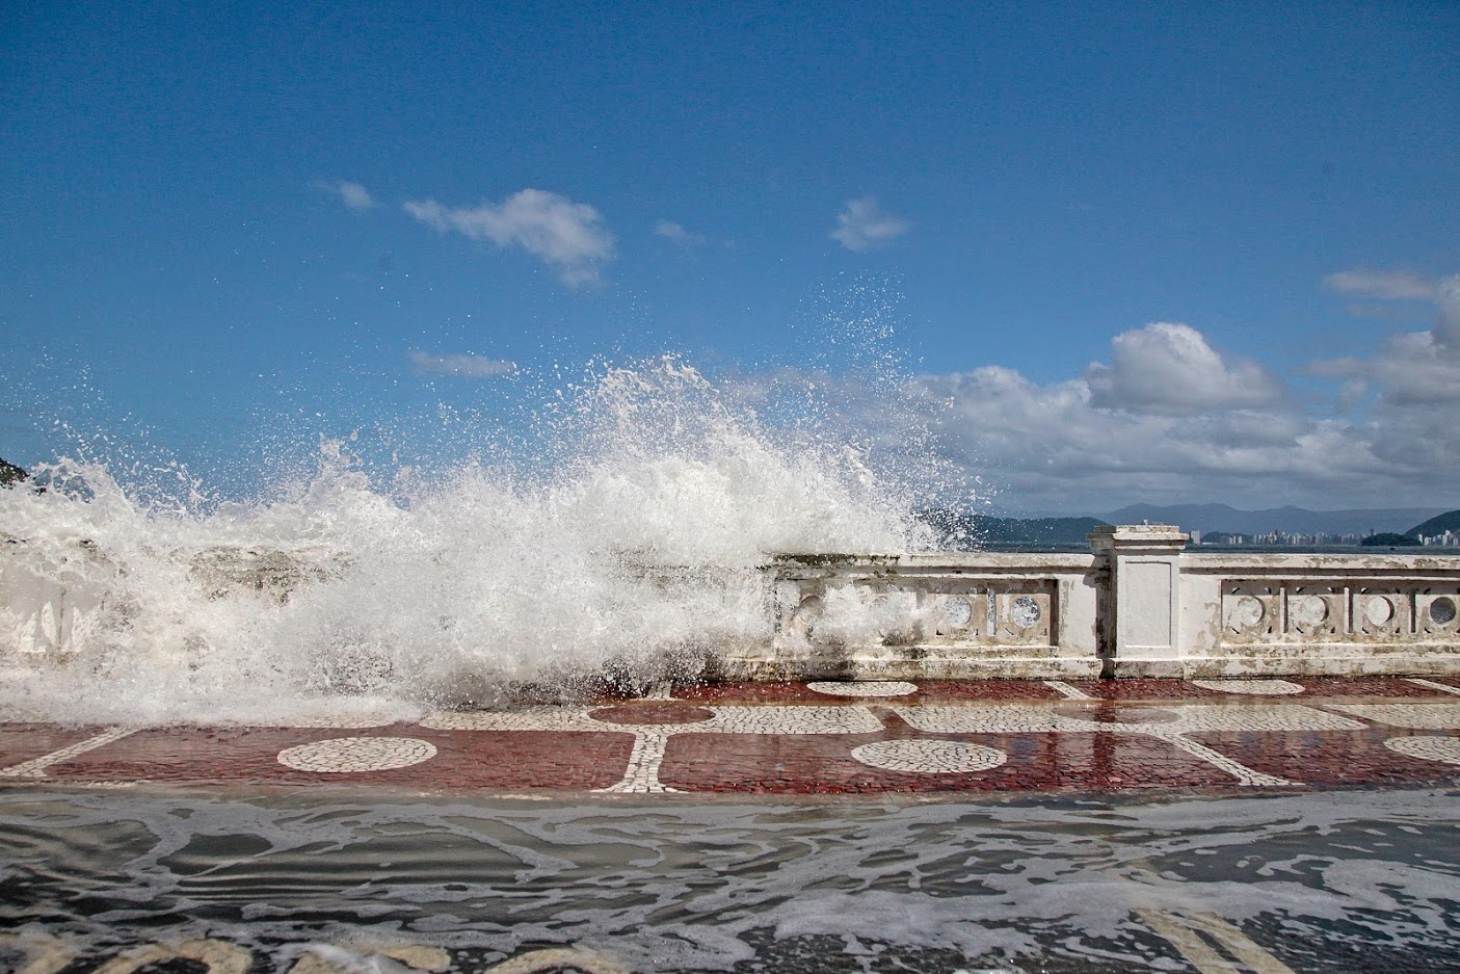 Alerta para forte ressaca no litoral de SP nos próximos dias | Jornal da Orla